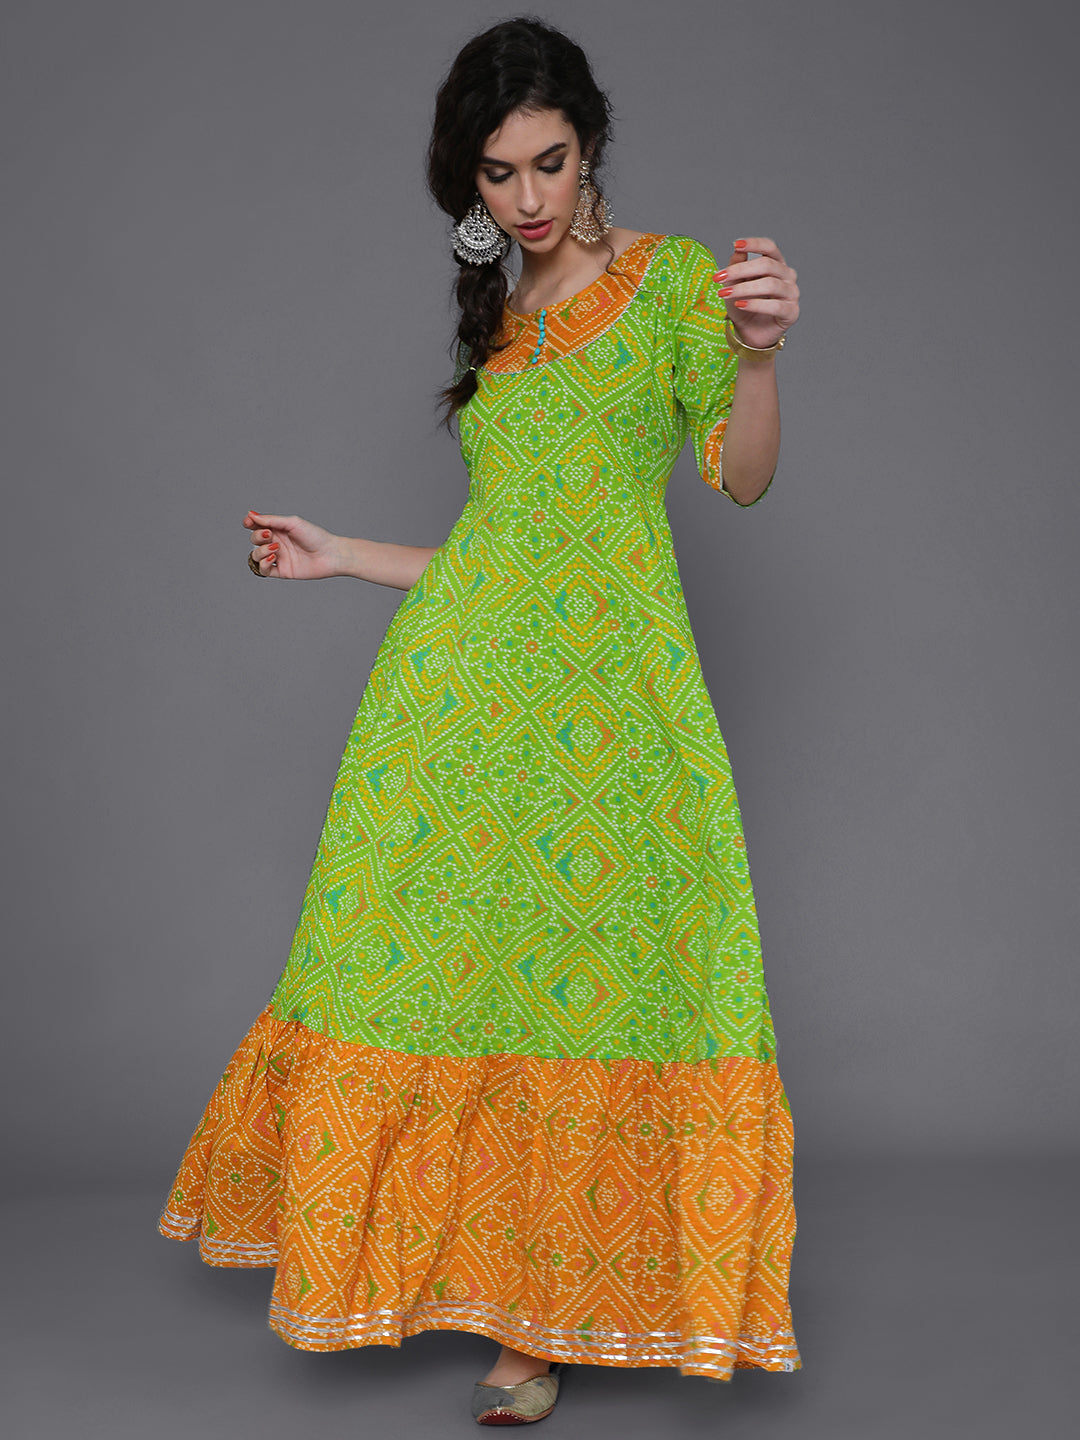 Green Bandhani Print Flared Maxi Dress